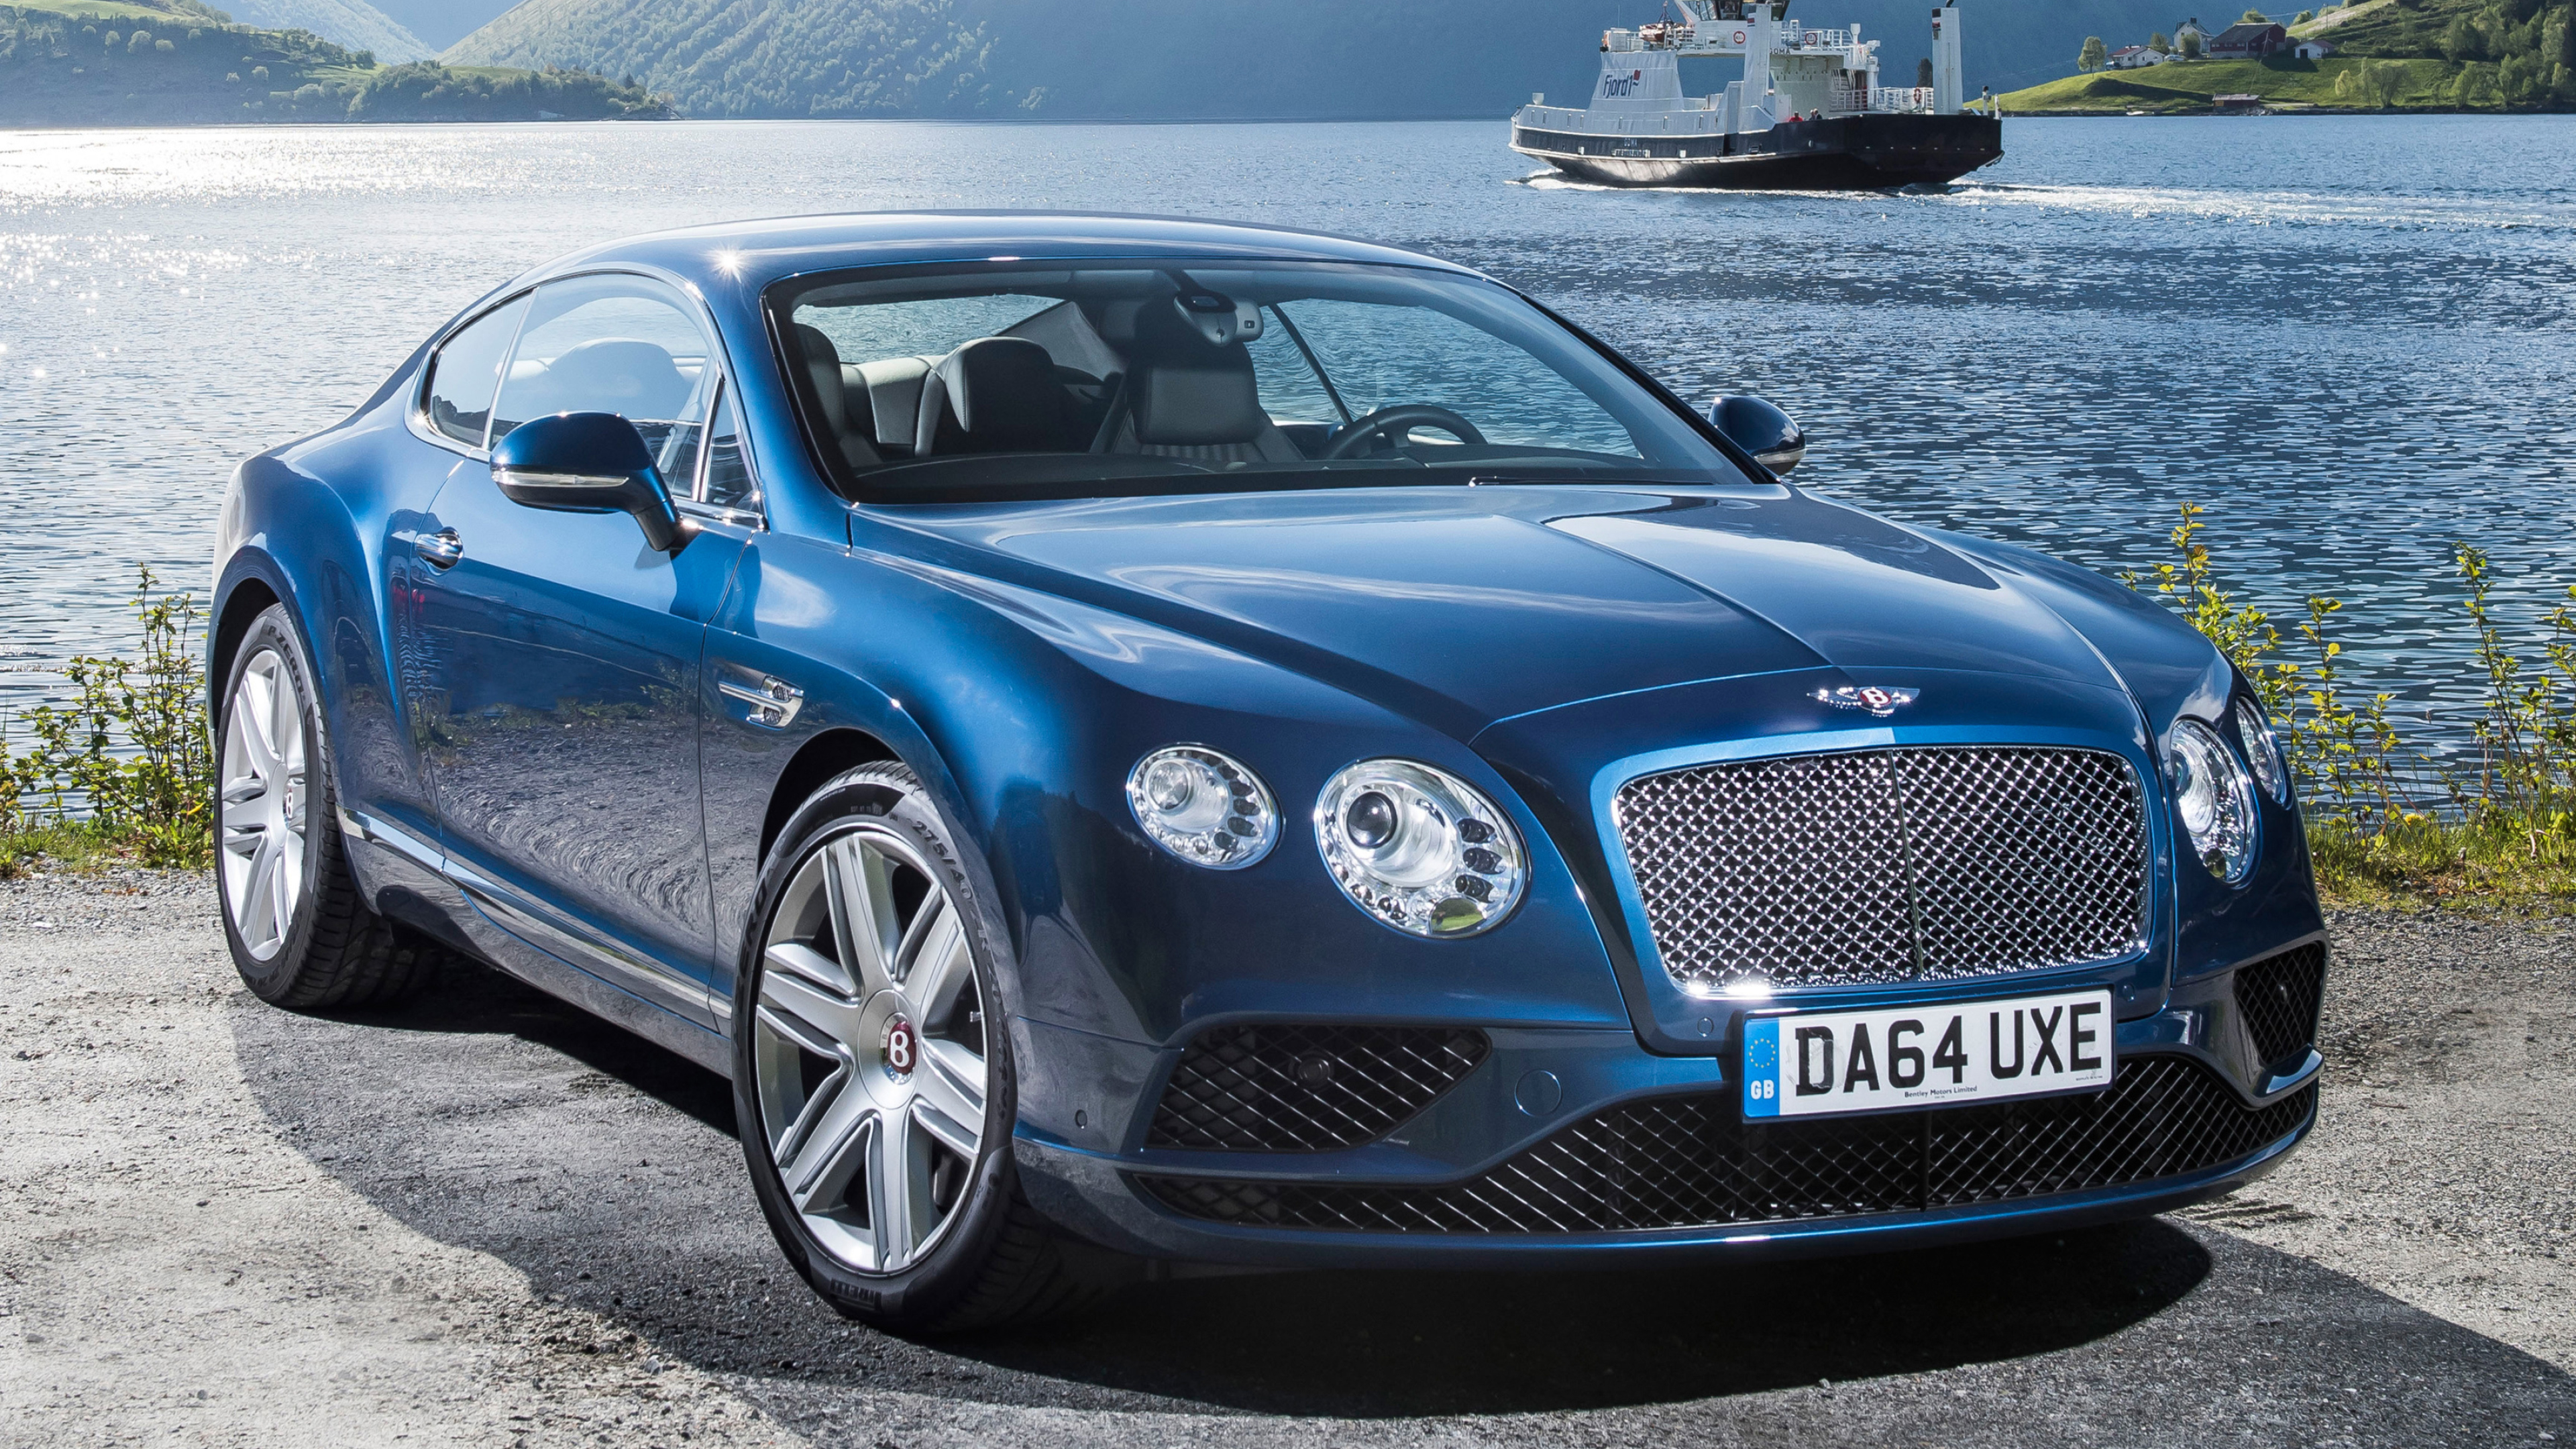 Bentley Continental GT, Luxury car wallpaper, 4K Ultra HD, Exquisite design, 3840x2160 4K Desktop